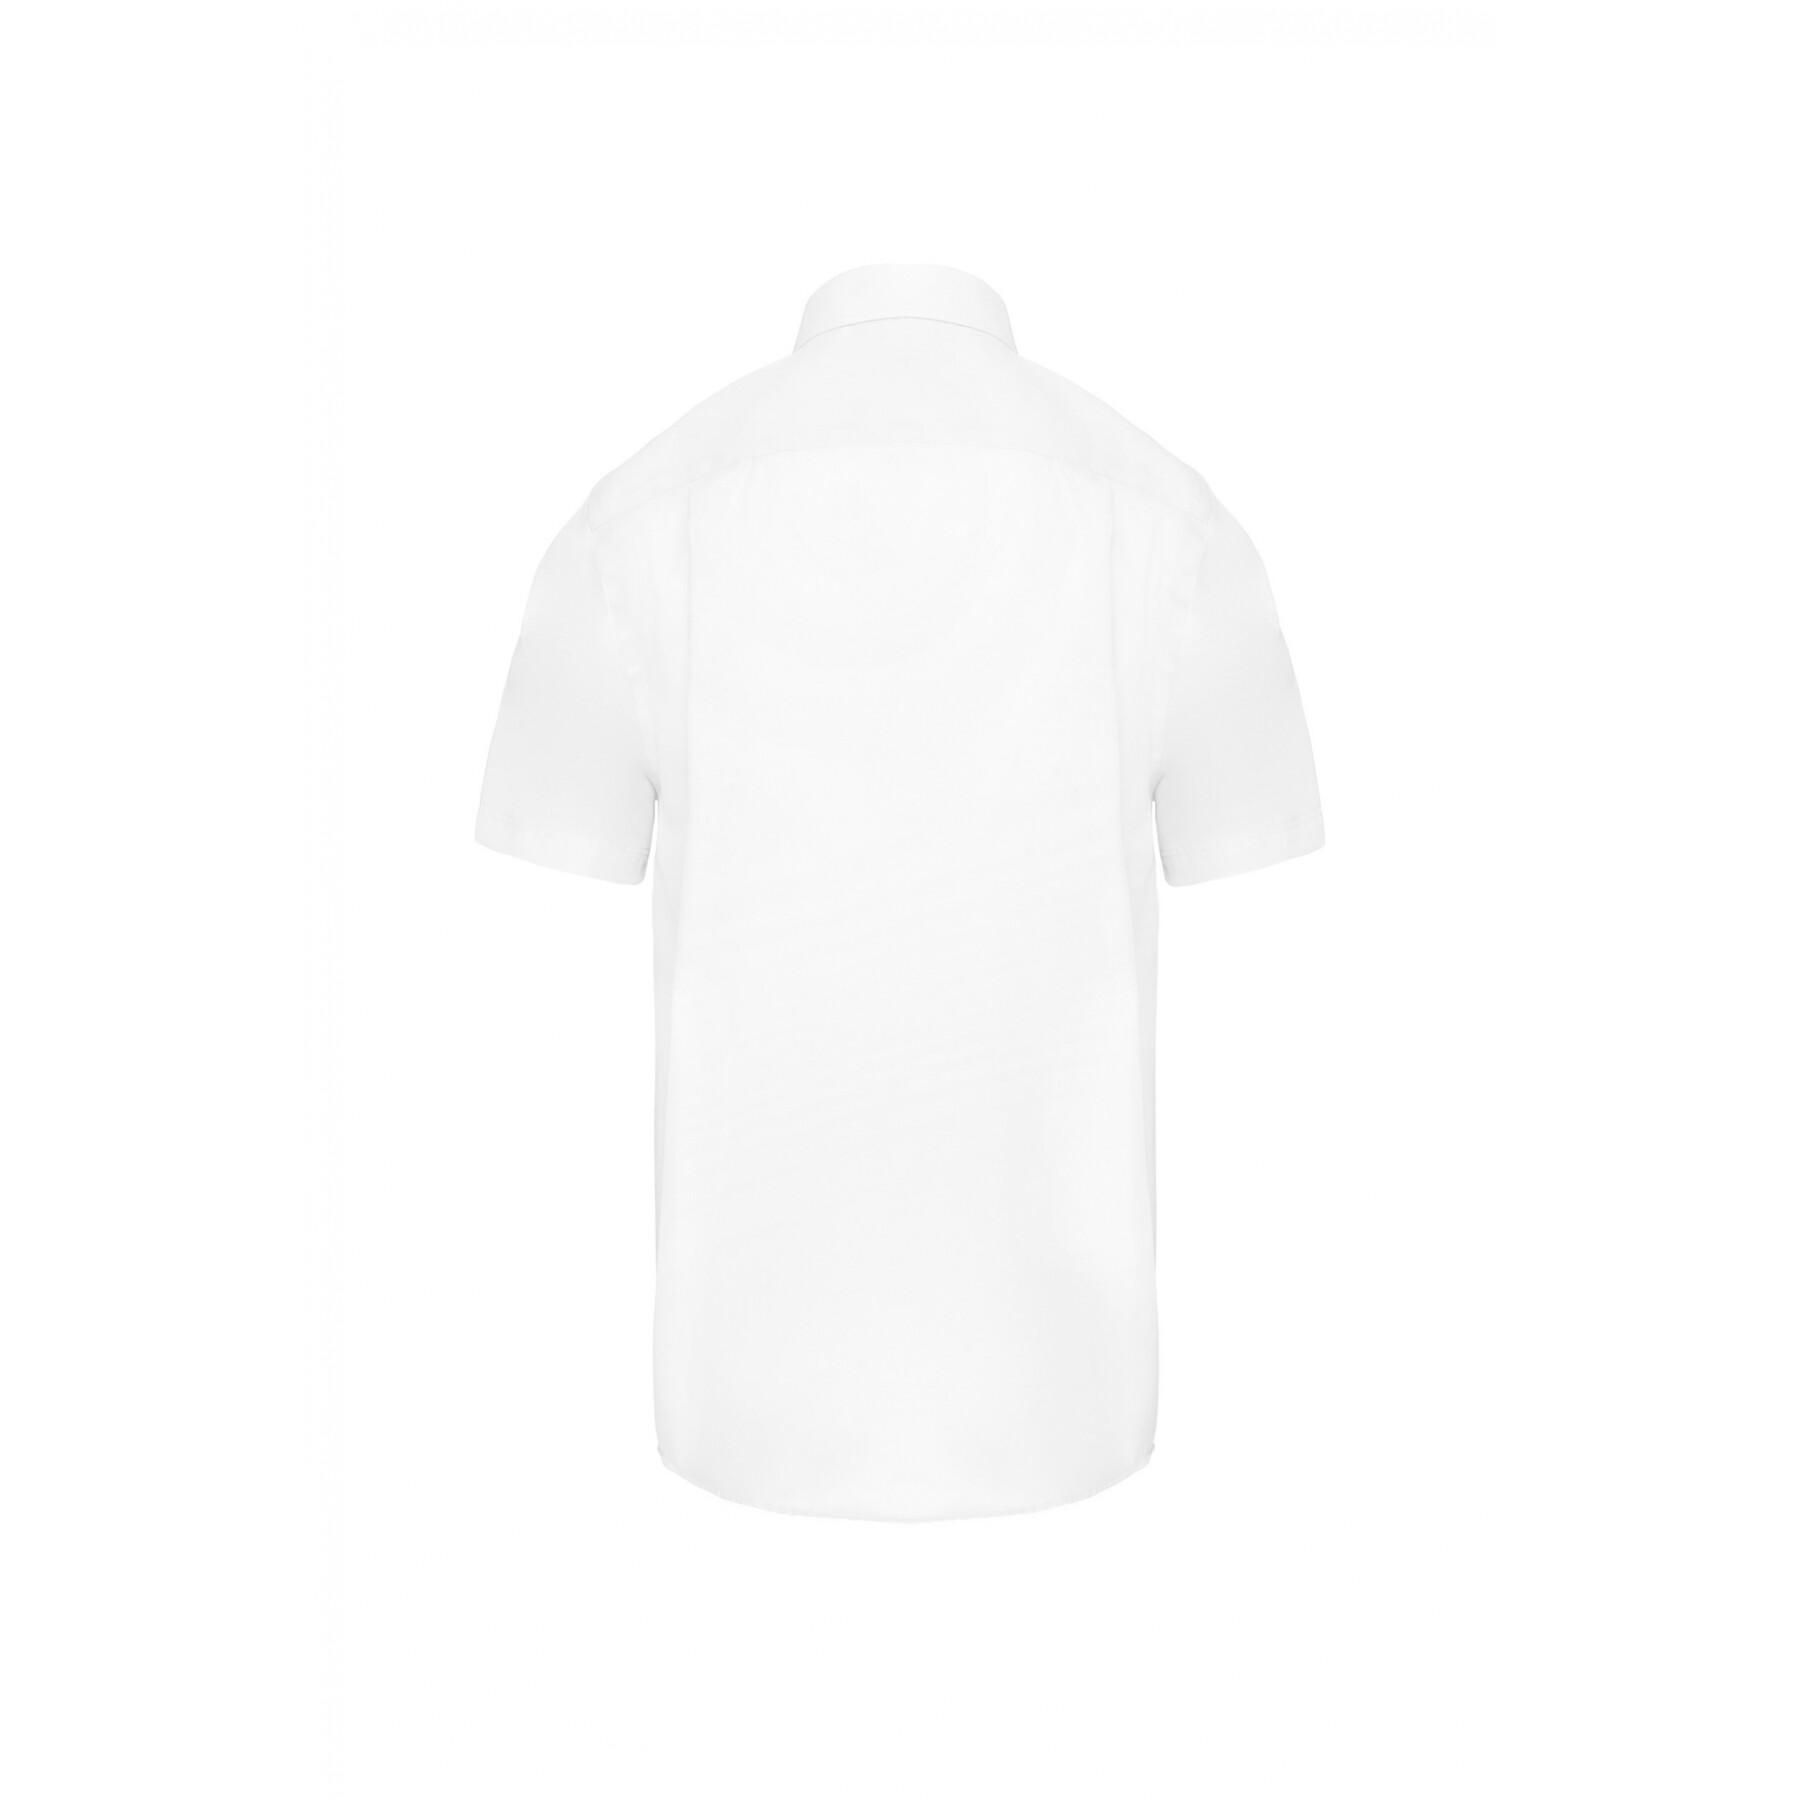 Koszula z krótkim rękawem Kariban blanc